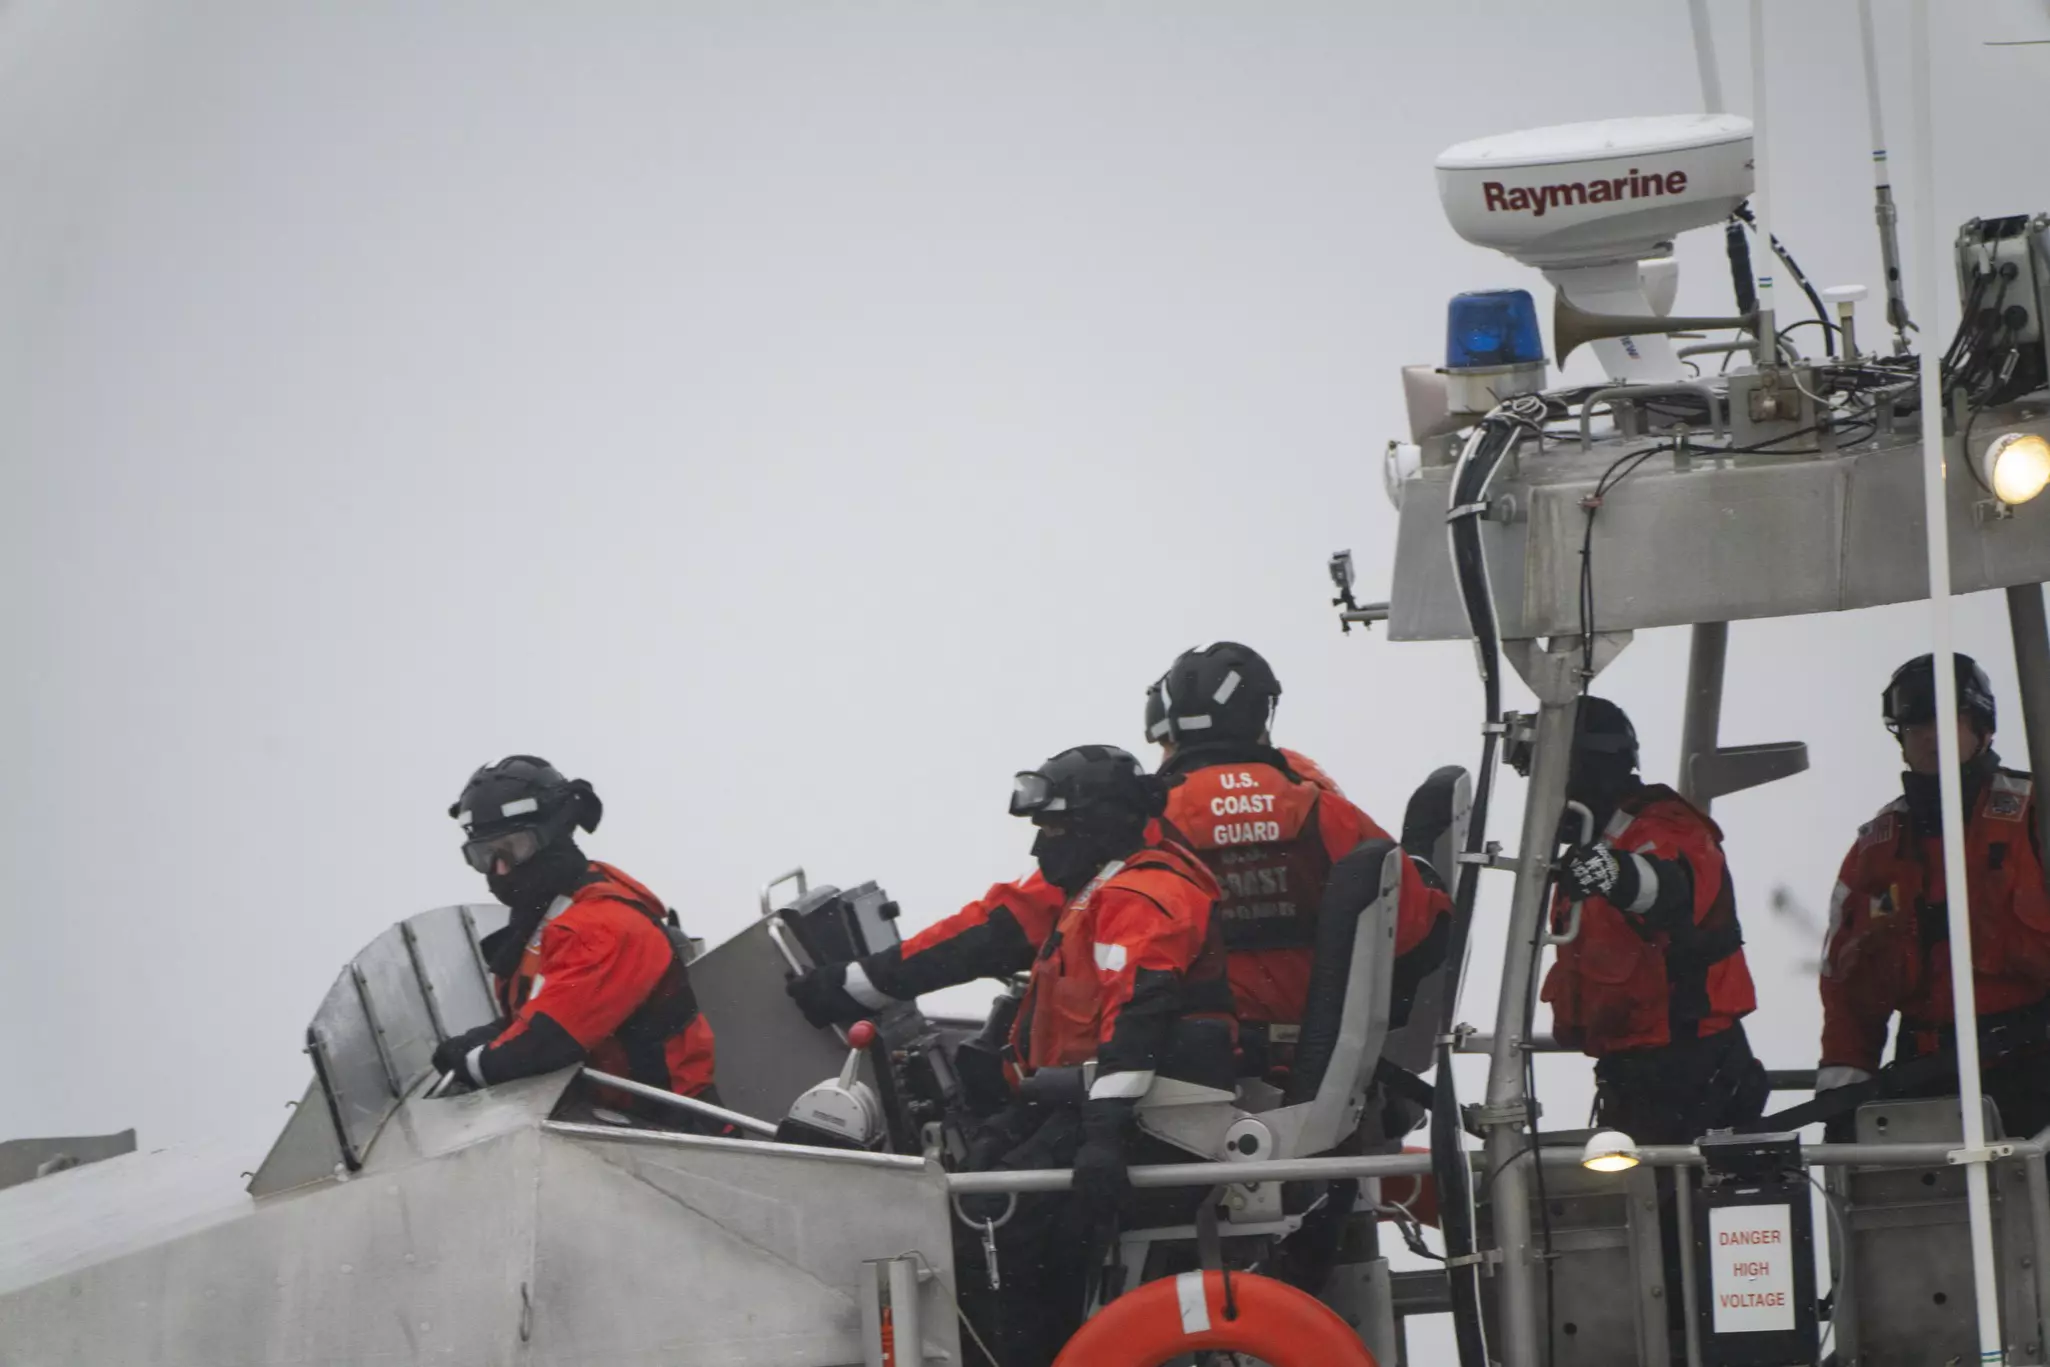 Formazione sulla scialuppa di salvataggio a motore della Guardia Costiera degli Stati Uniti in condizioni di mare mosso